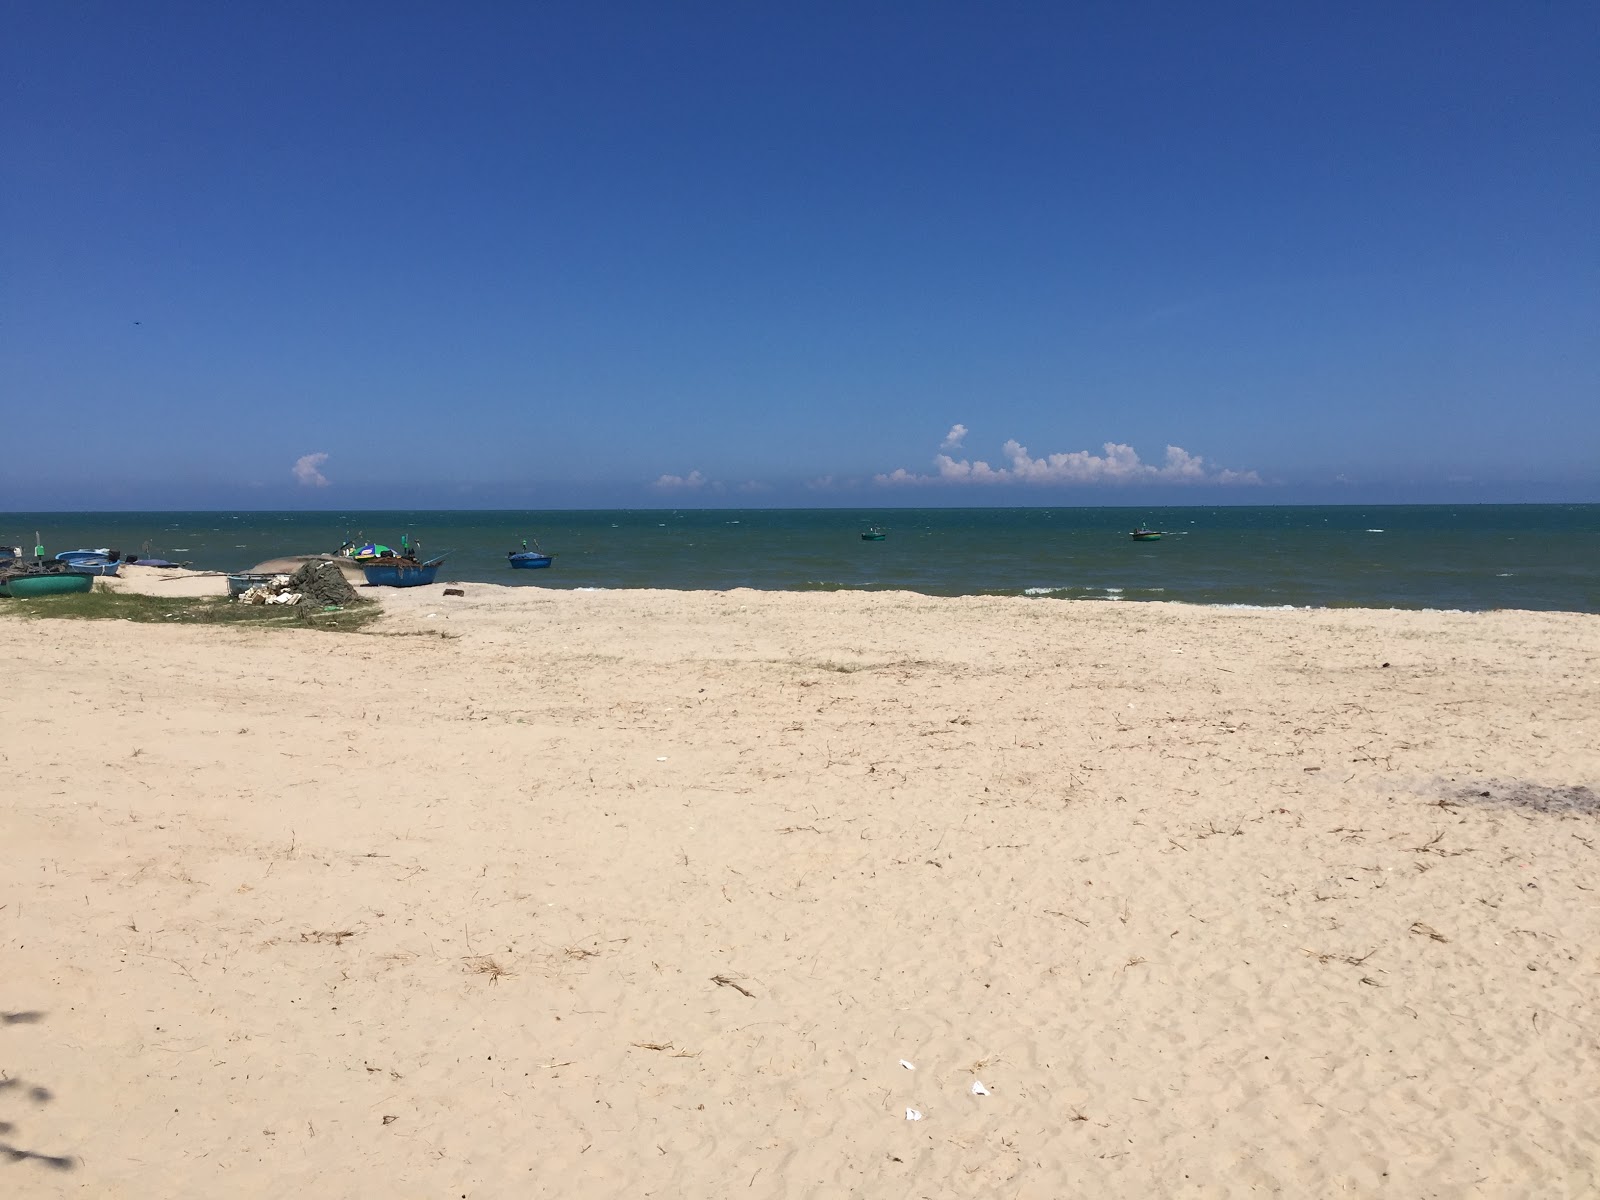 Zdjęcie Tan Hai Beach z powierzchnią biały piasek